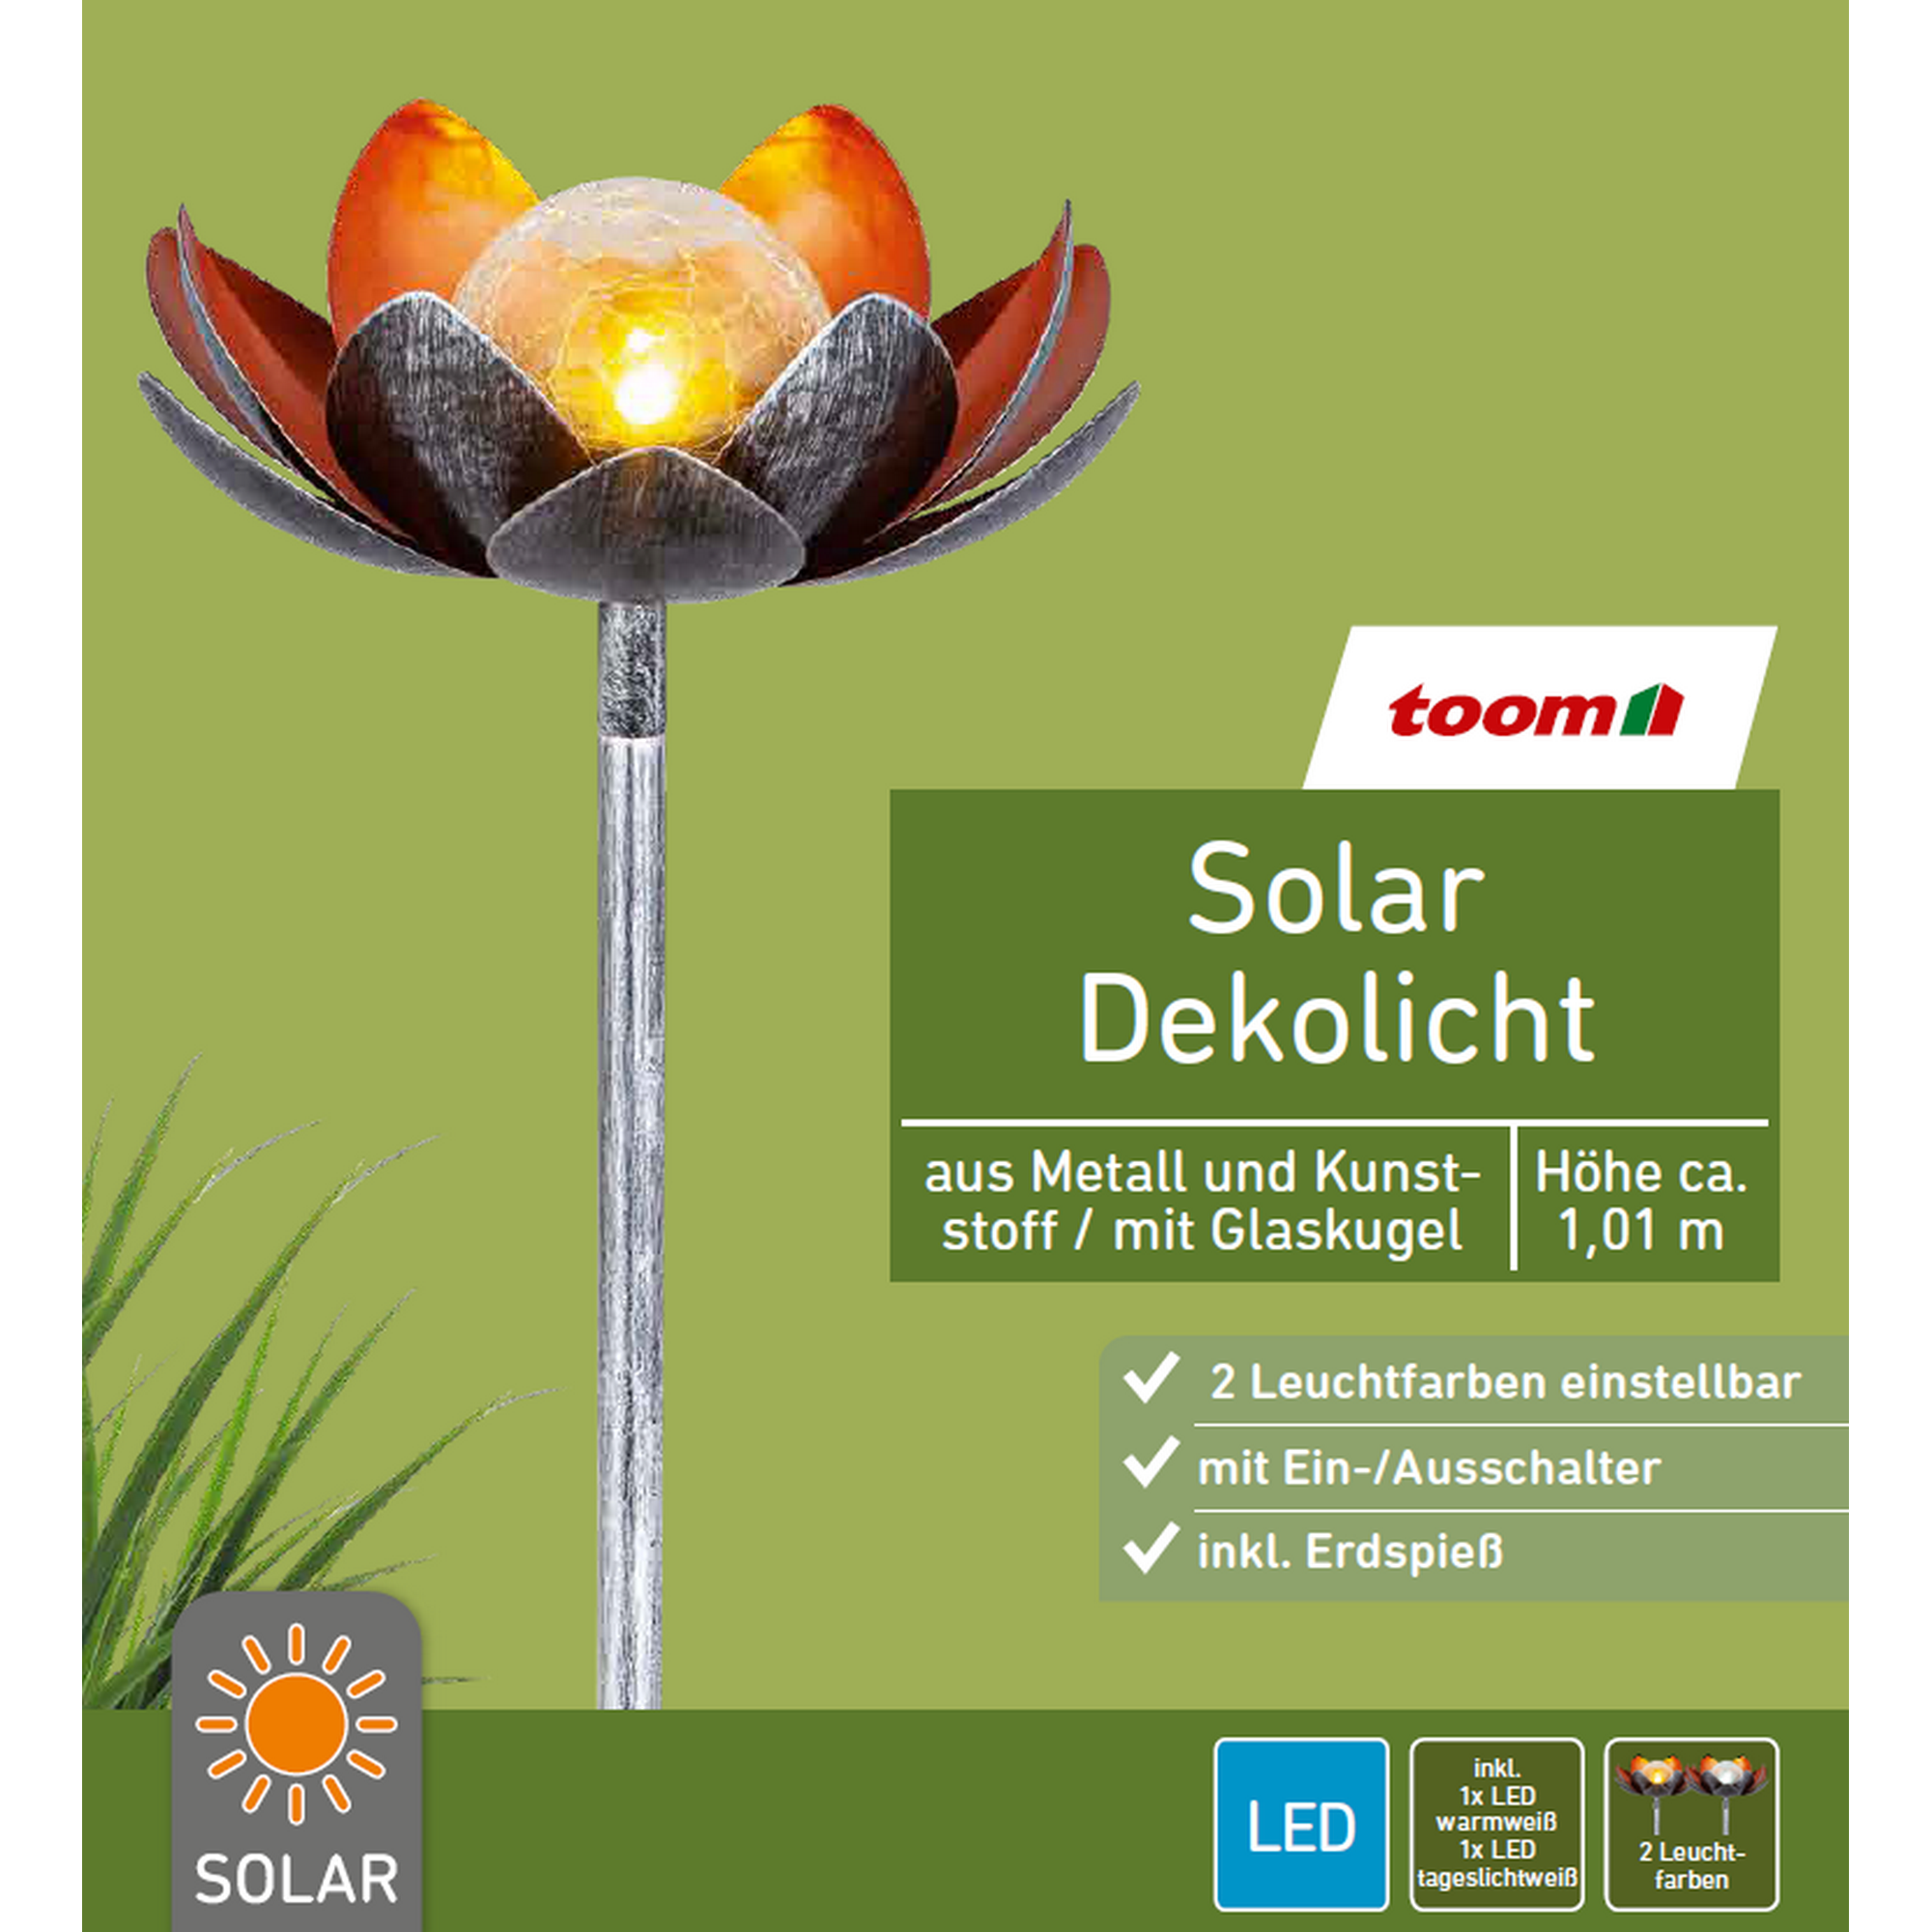 Solar-Dekoleuchte Lotus bronze/gold Ø 22 x 101 cm + product picture